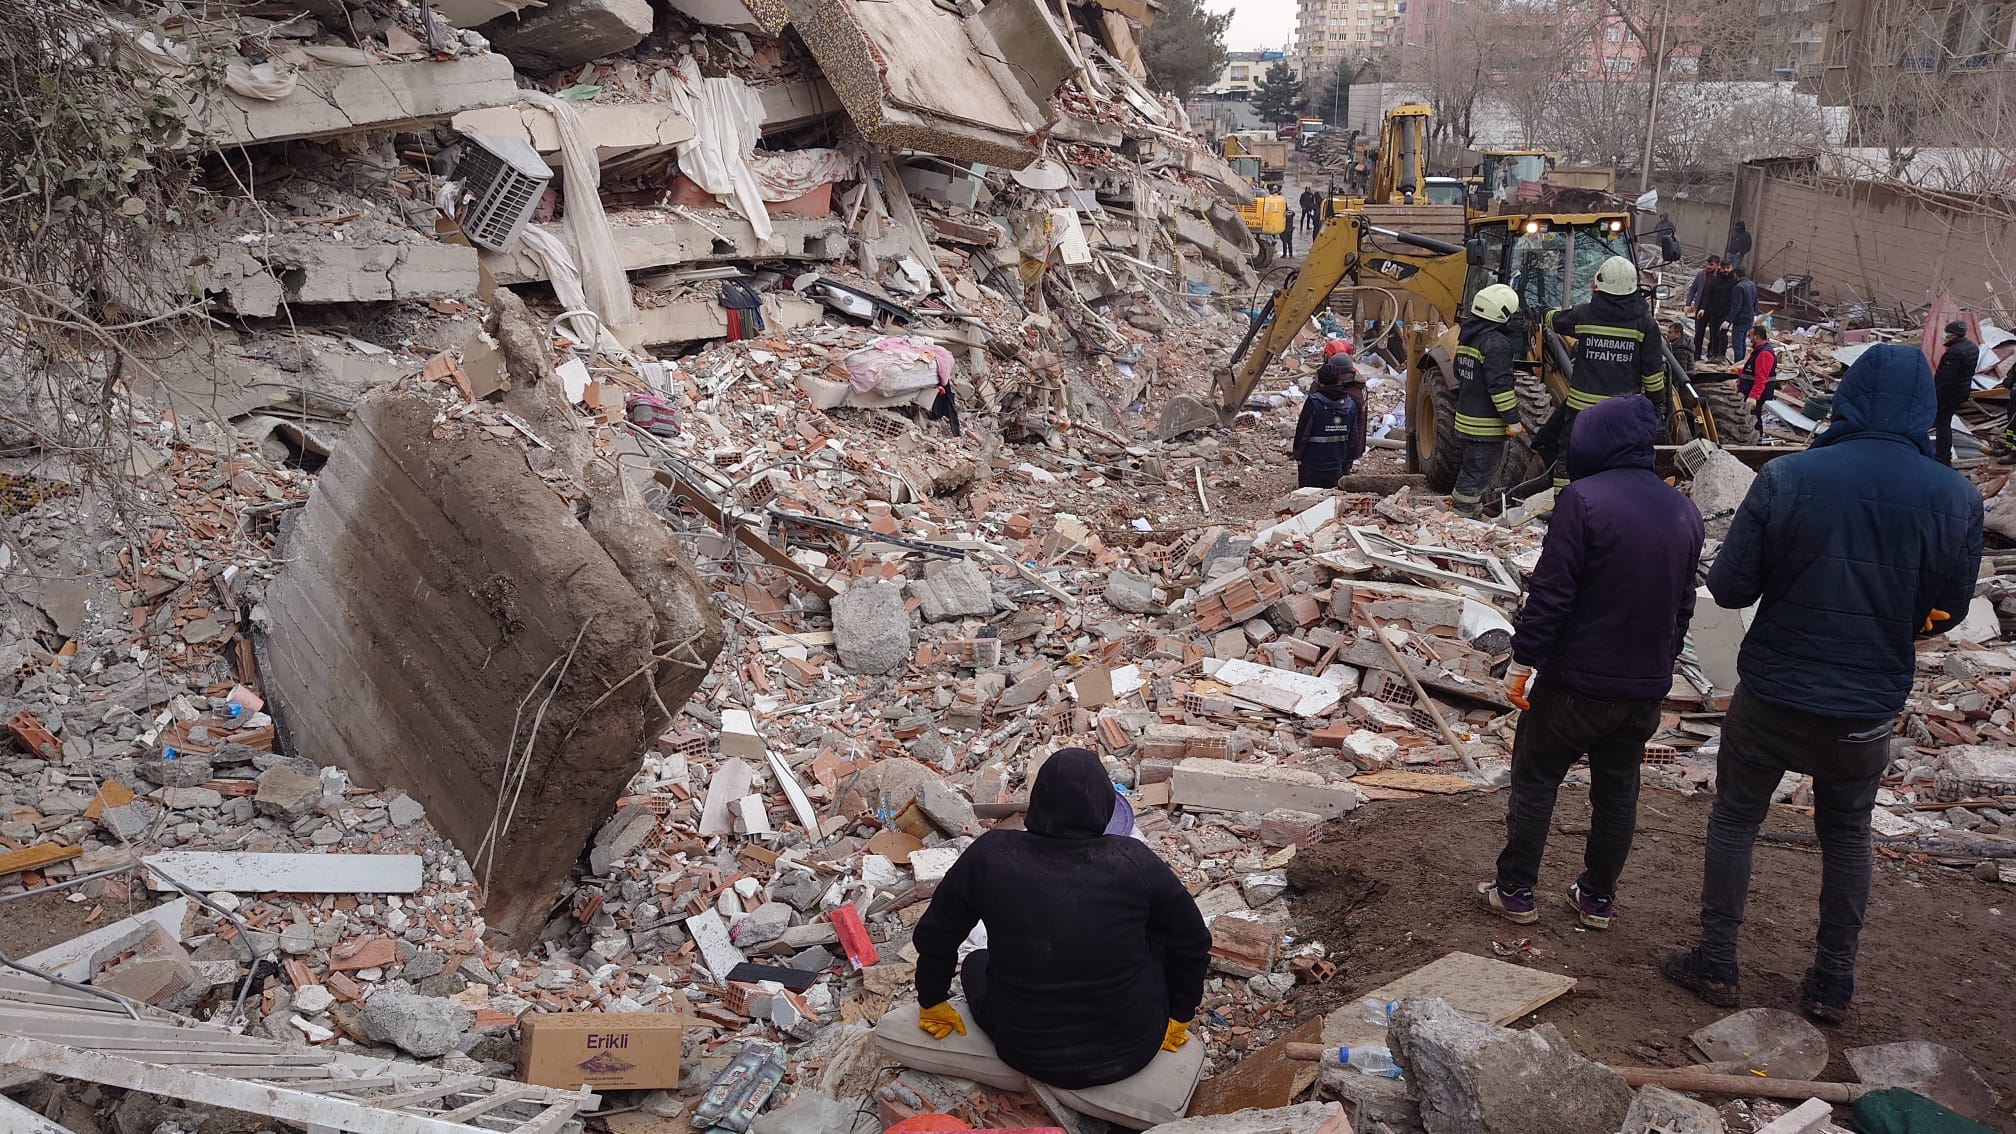 Earthwuake damage in Turkey, February 2023